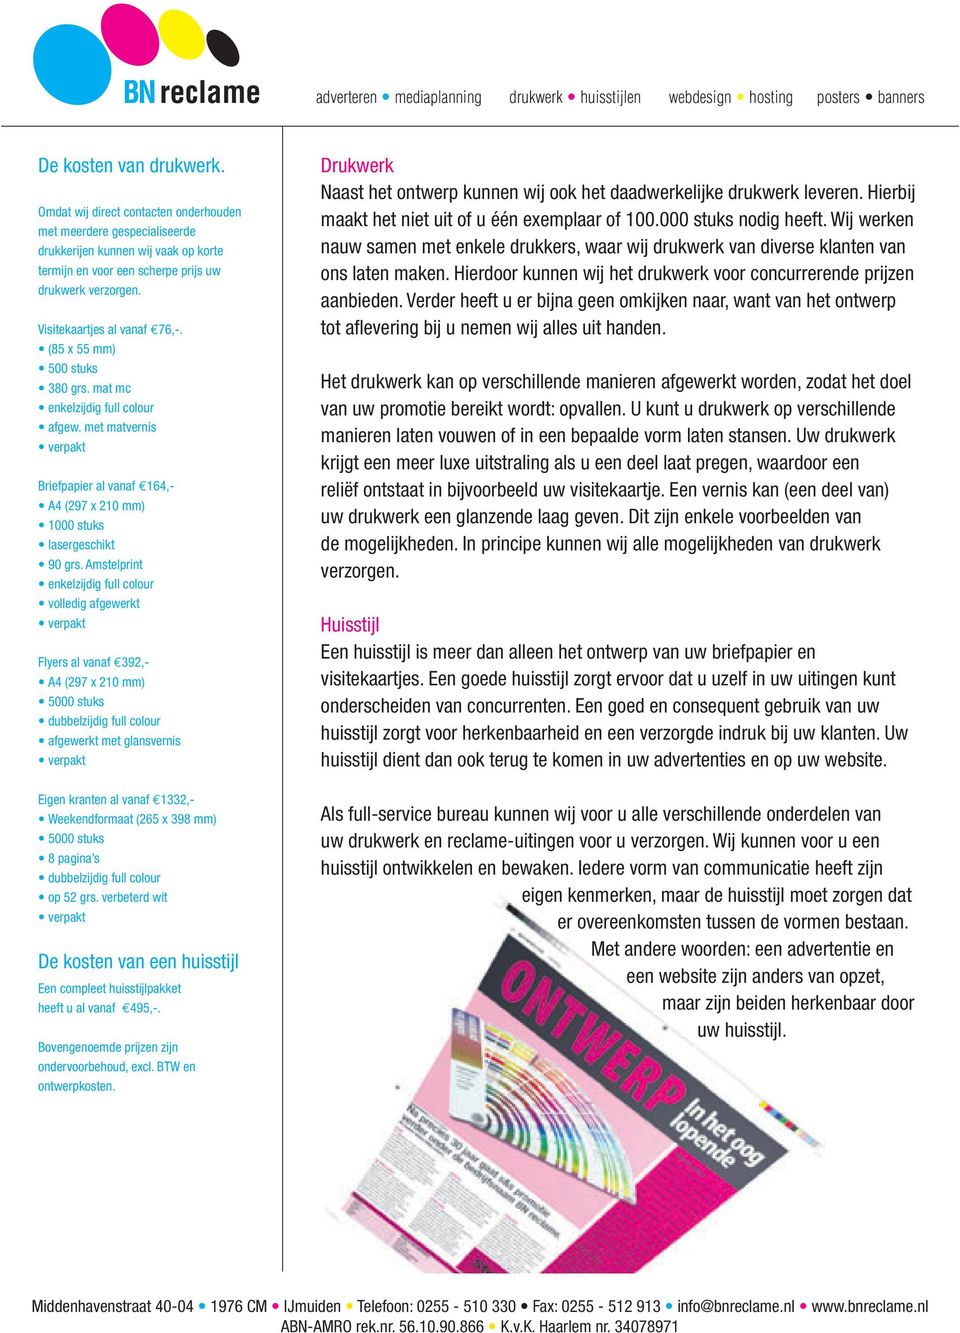 Amstelprint enkelzijdig full colour volledig afgewerkt Flyers al vanaf 392,- A4 (297 x 210 mm) 5000 stuks dubbelzijdig full colour afgewerkt met glansvernis Eigen kranten al vanaf 1332,-